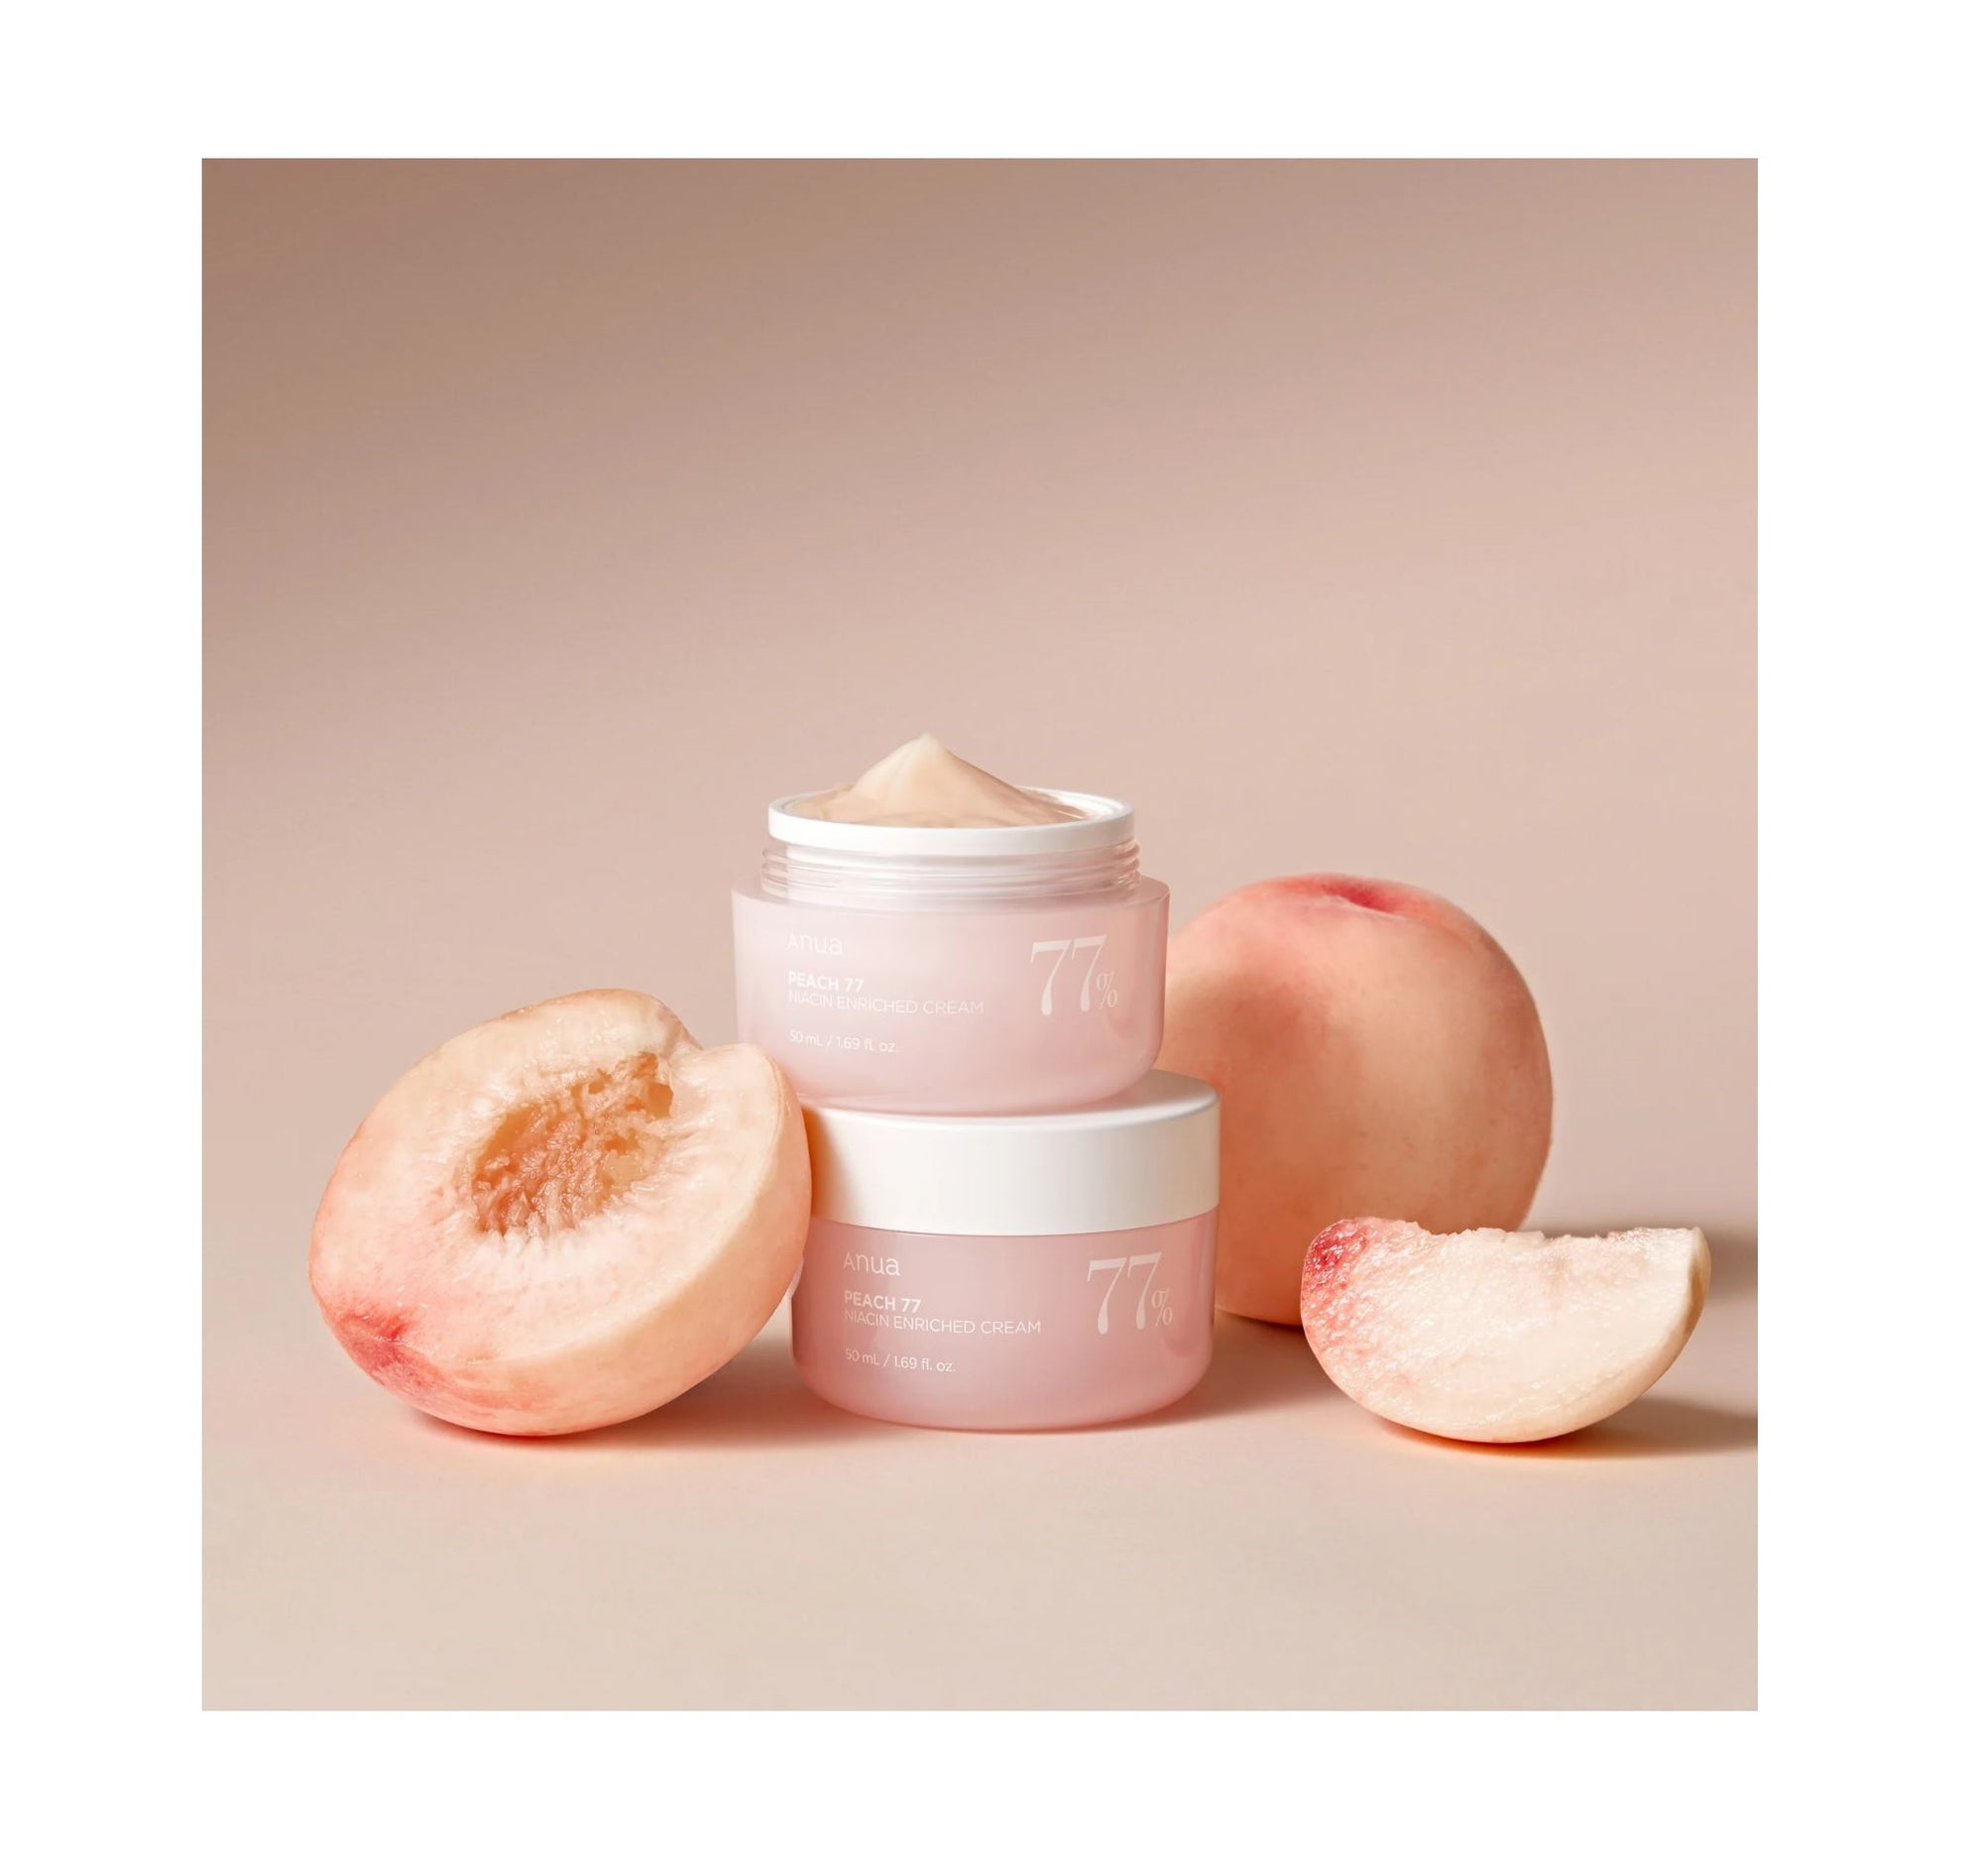 Peach 77 Niacin Enriched Cream